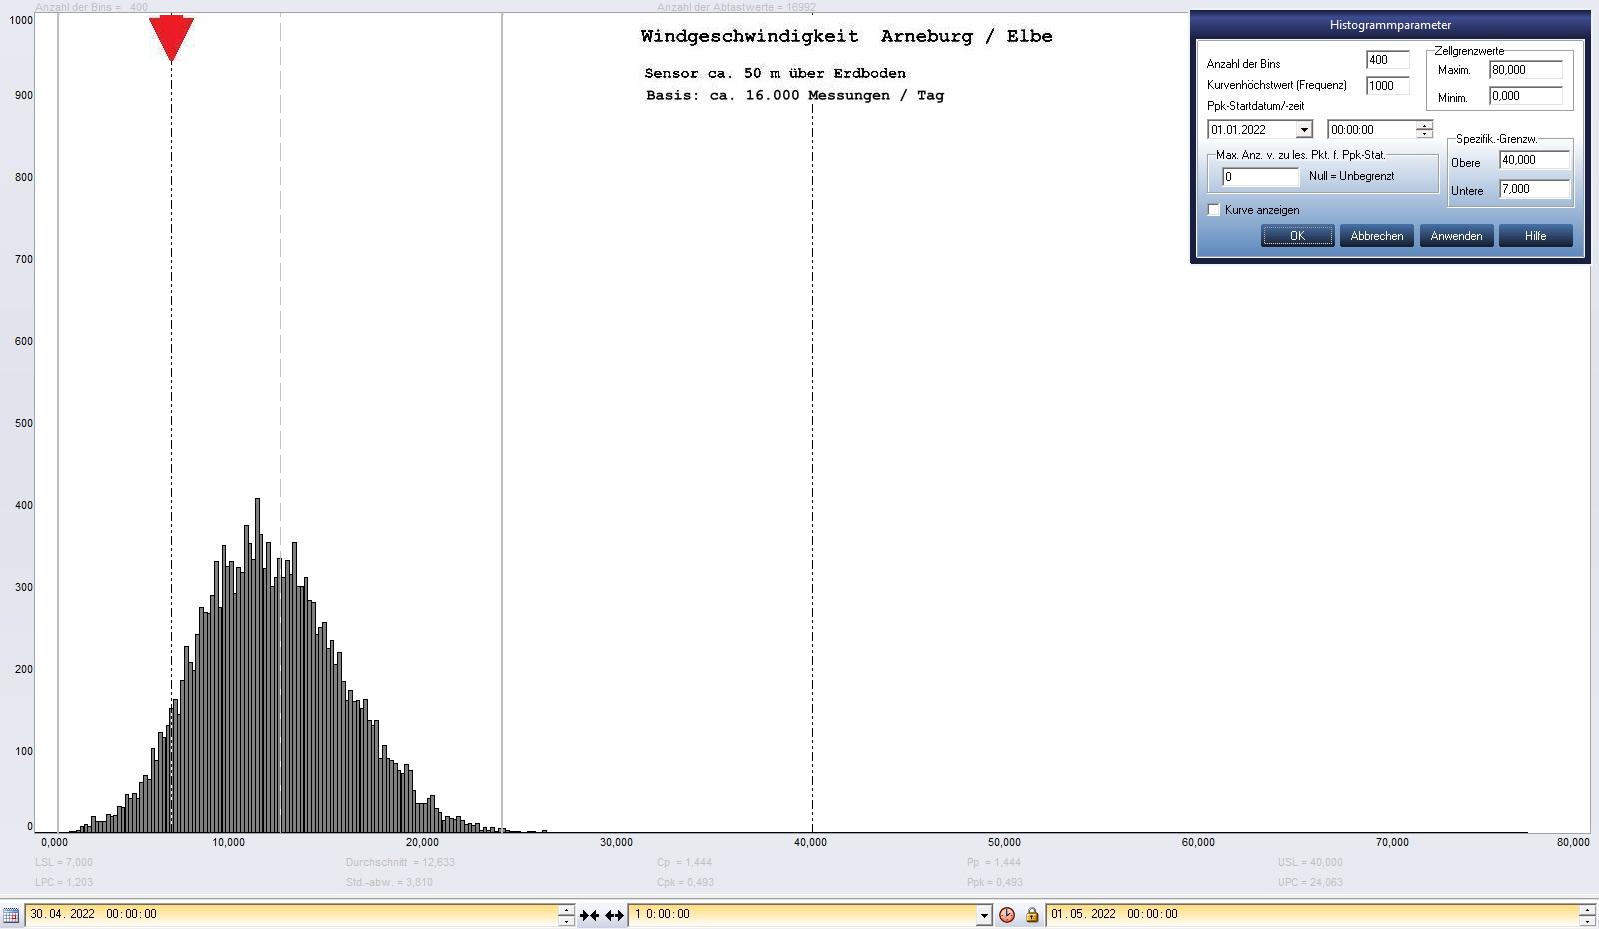 Arneburg Tages-Histogramm Winddaten, 30.04.2022
  Histogramm, Sensor auf Gebude, ca. 50 m ber Erdboden, Basis: 5s-Aufzeichnung